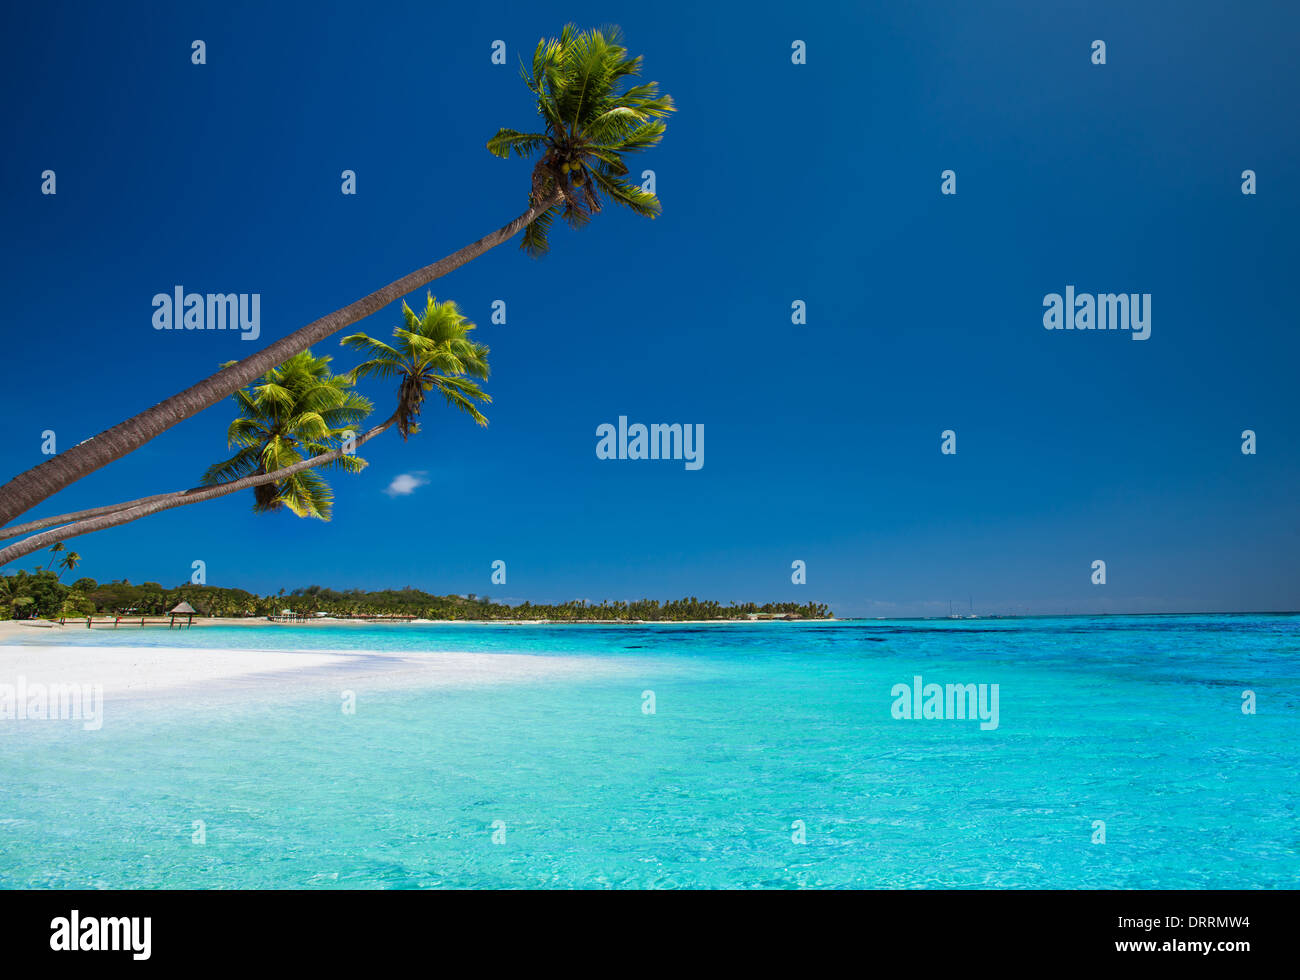 Einige Kokospalmen am einsamen Strand von tropischen Insel Stockfoto